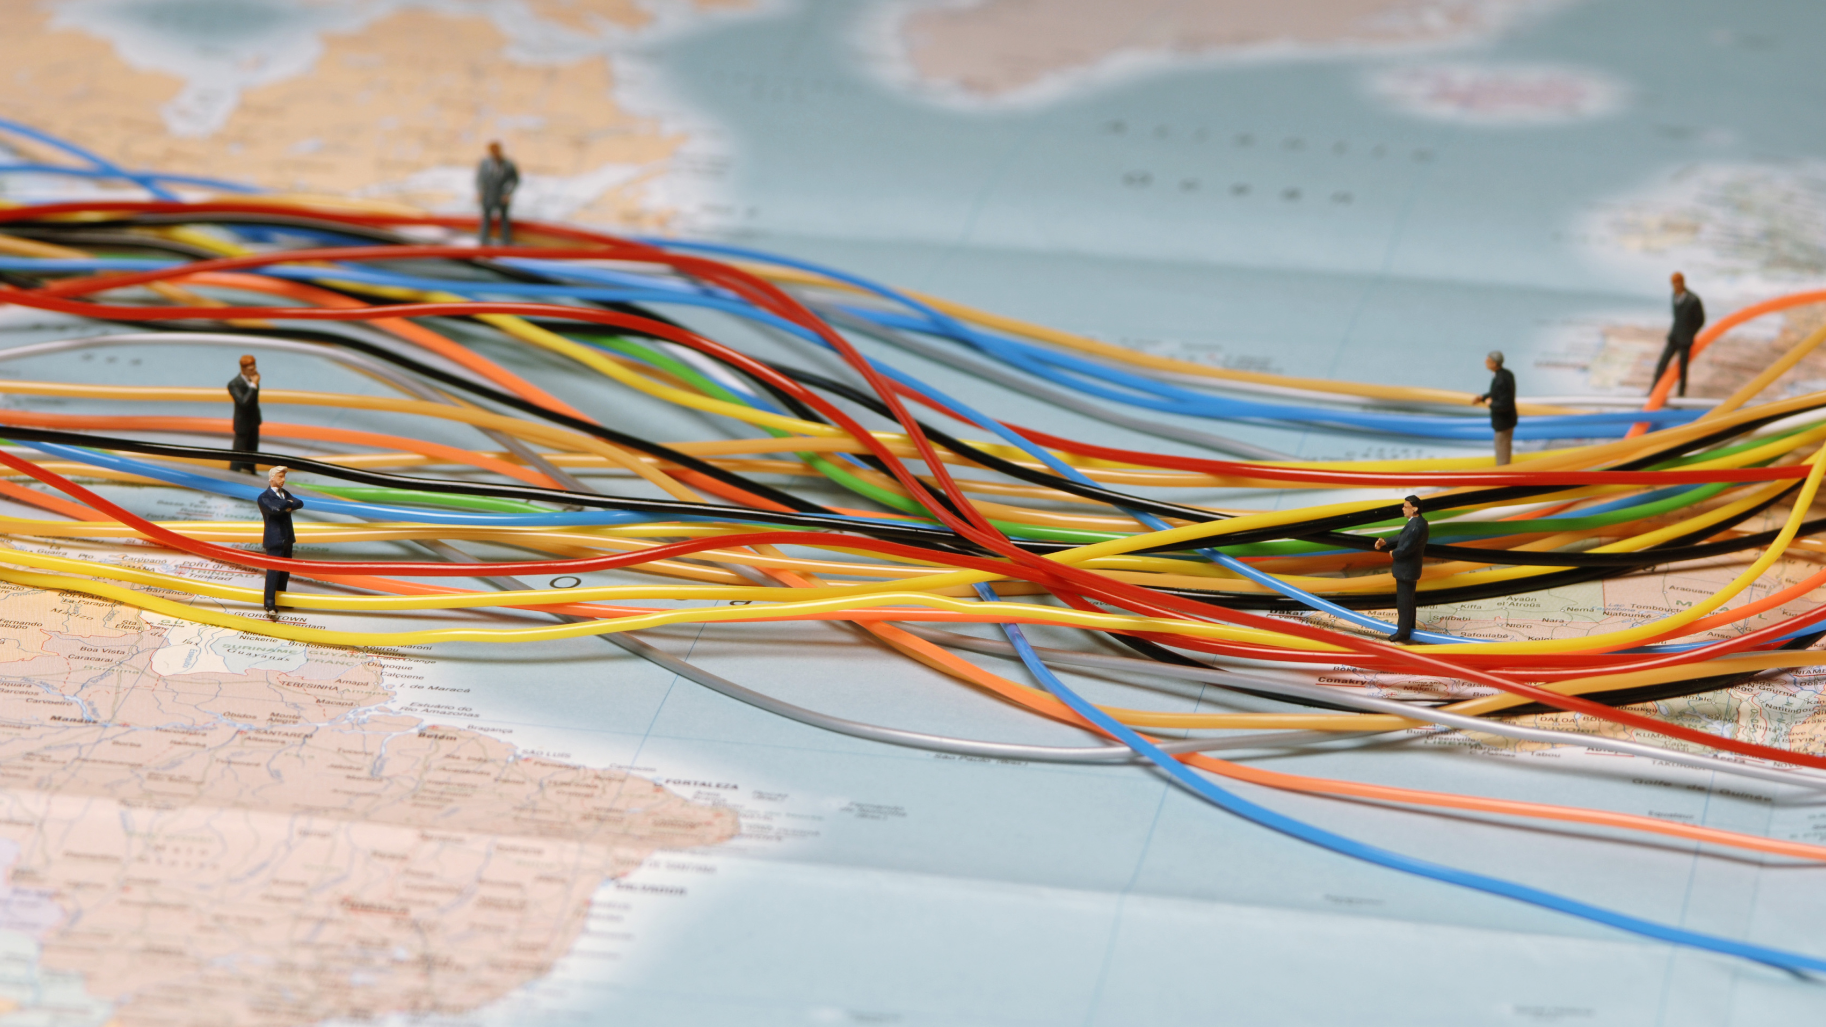 Petits bonhommes en plastque et câbles déposés sur une carte de l'Atlantique reliant les deux continents